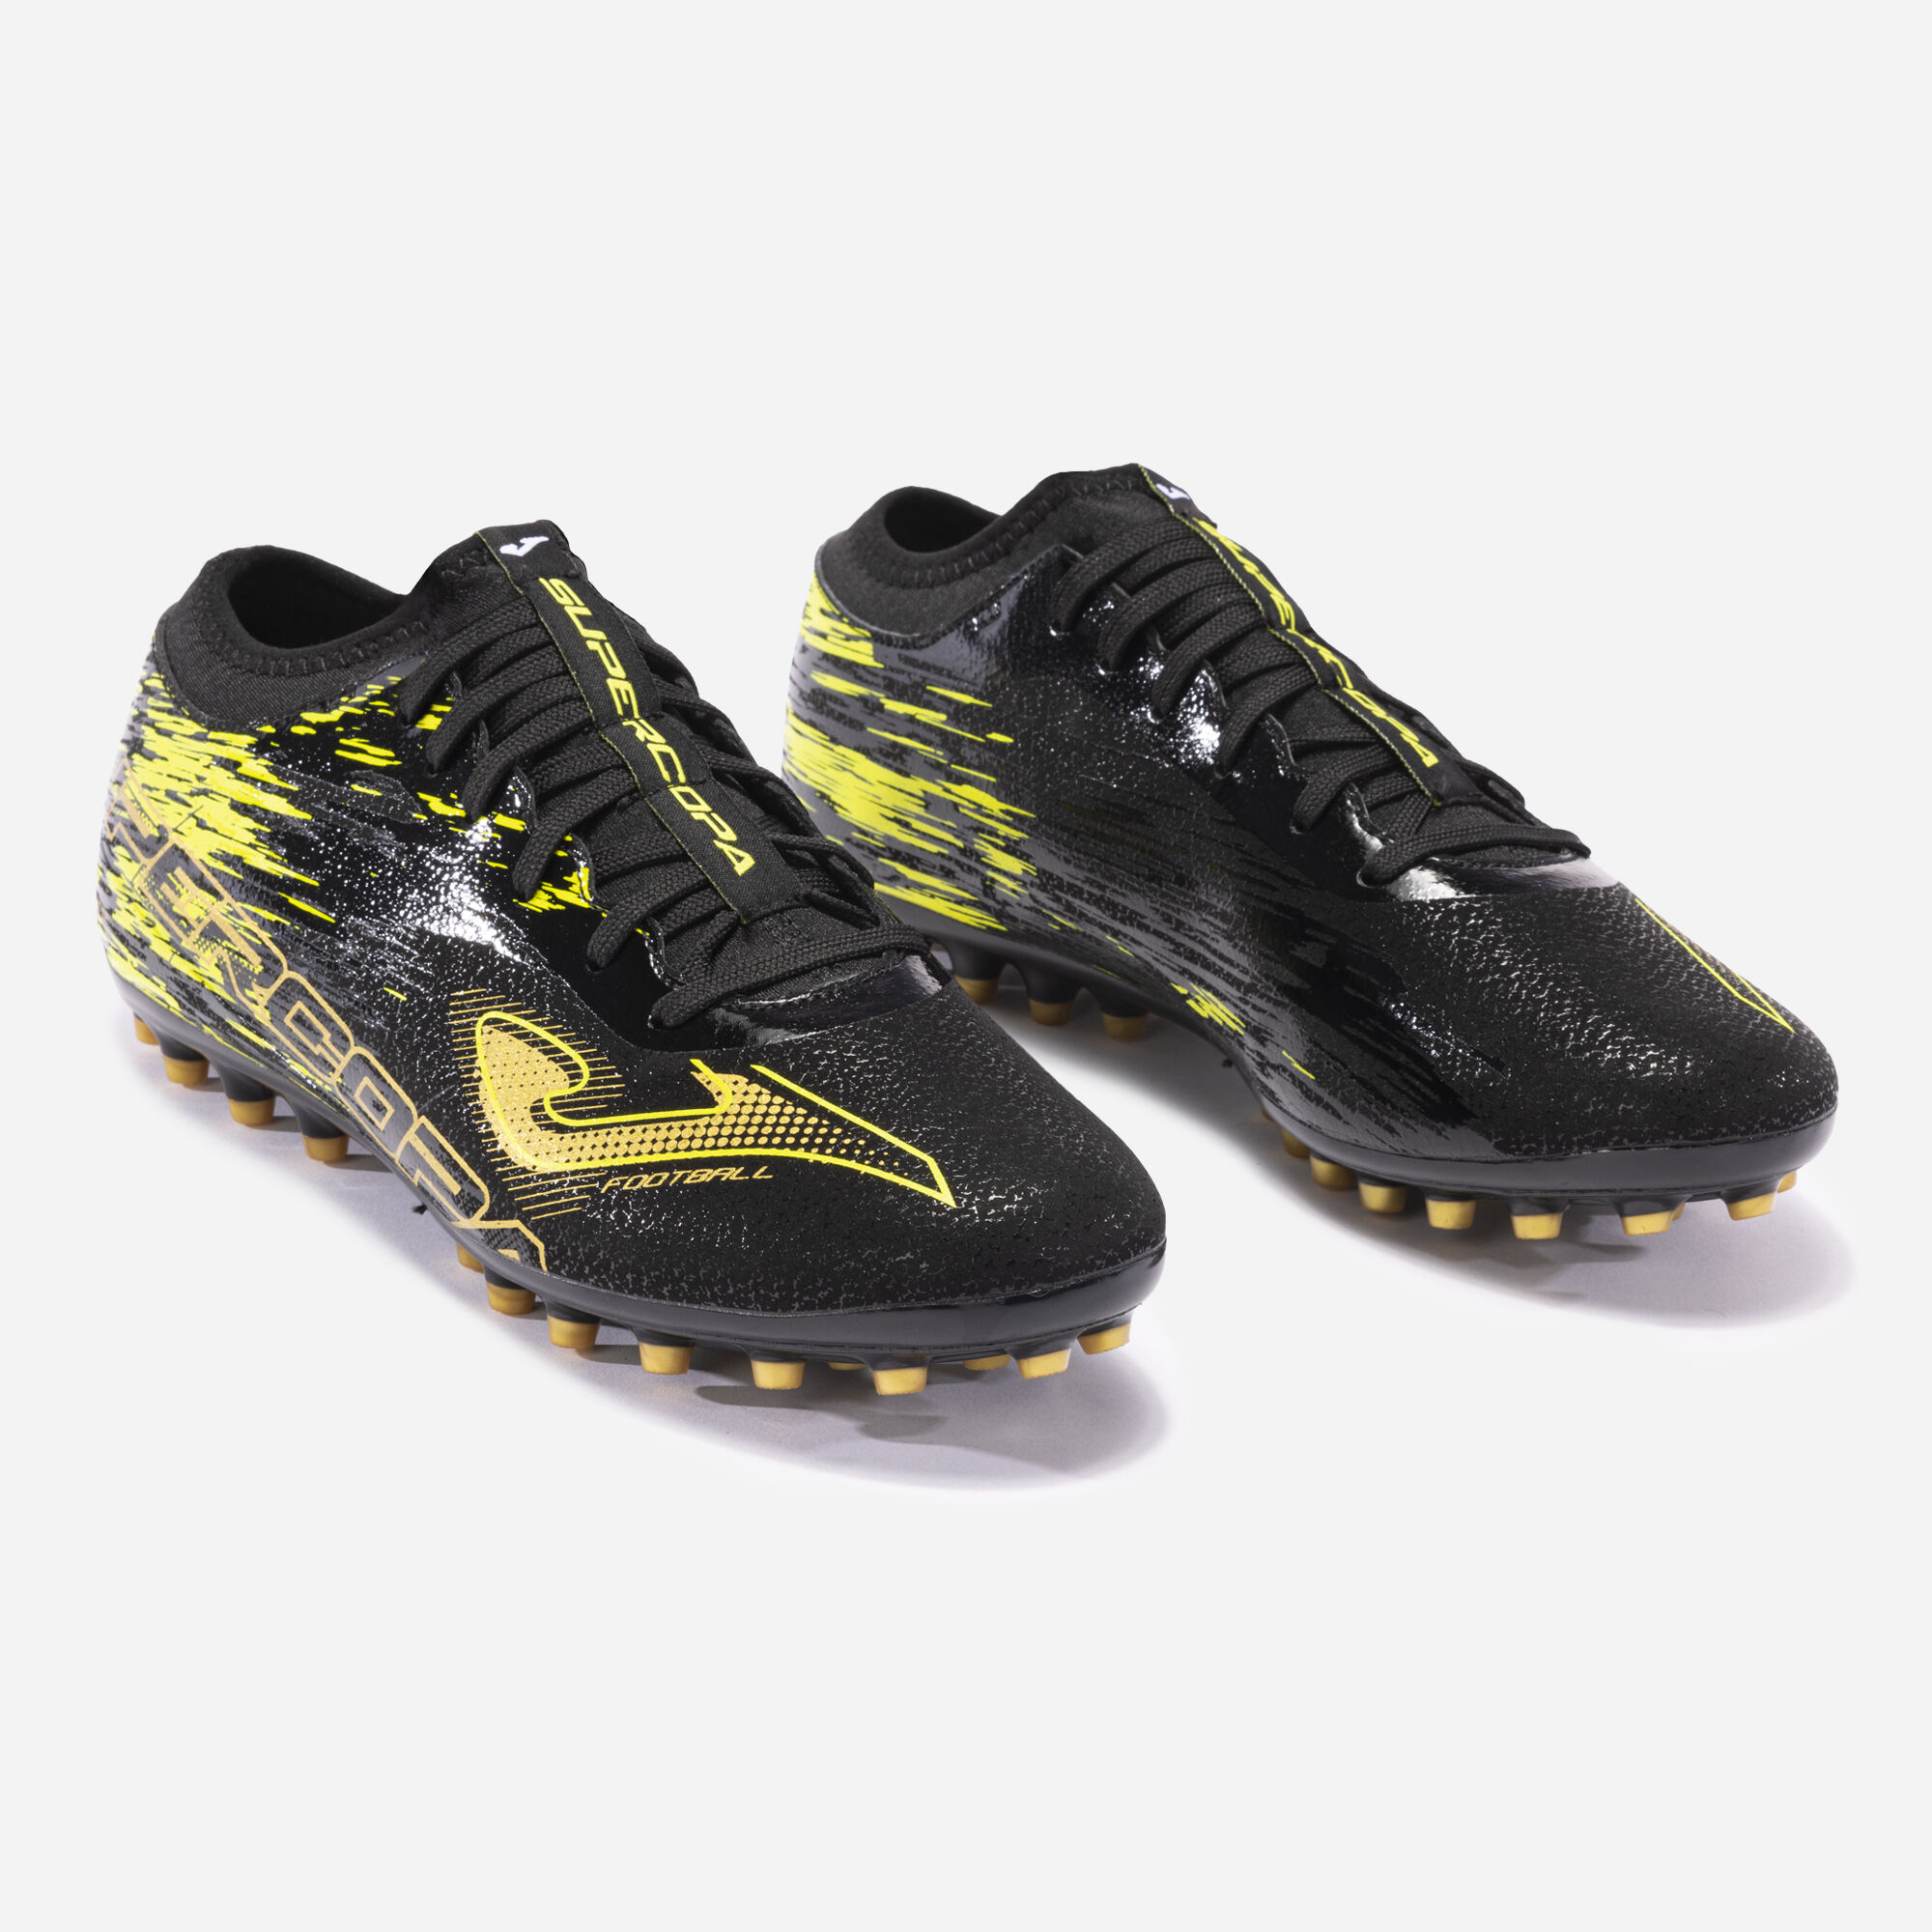 Football boots Supercopa 23 artificial grass black fluorescent yellow